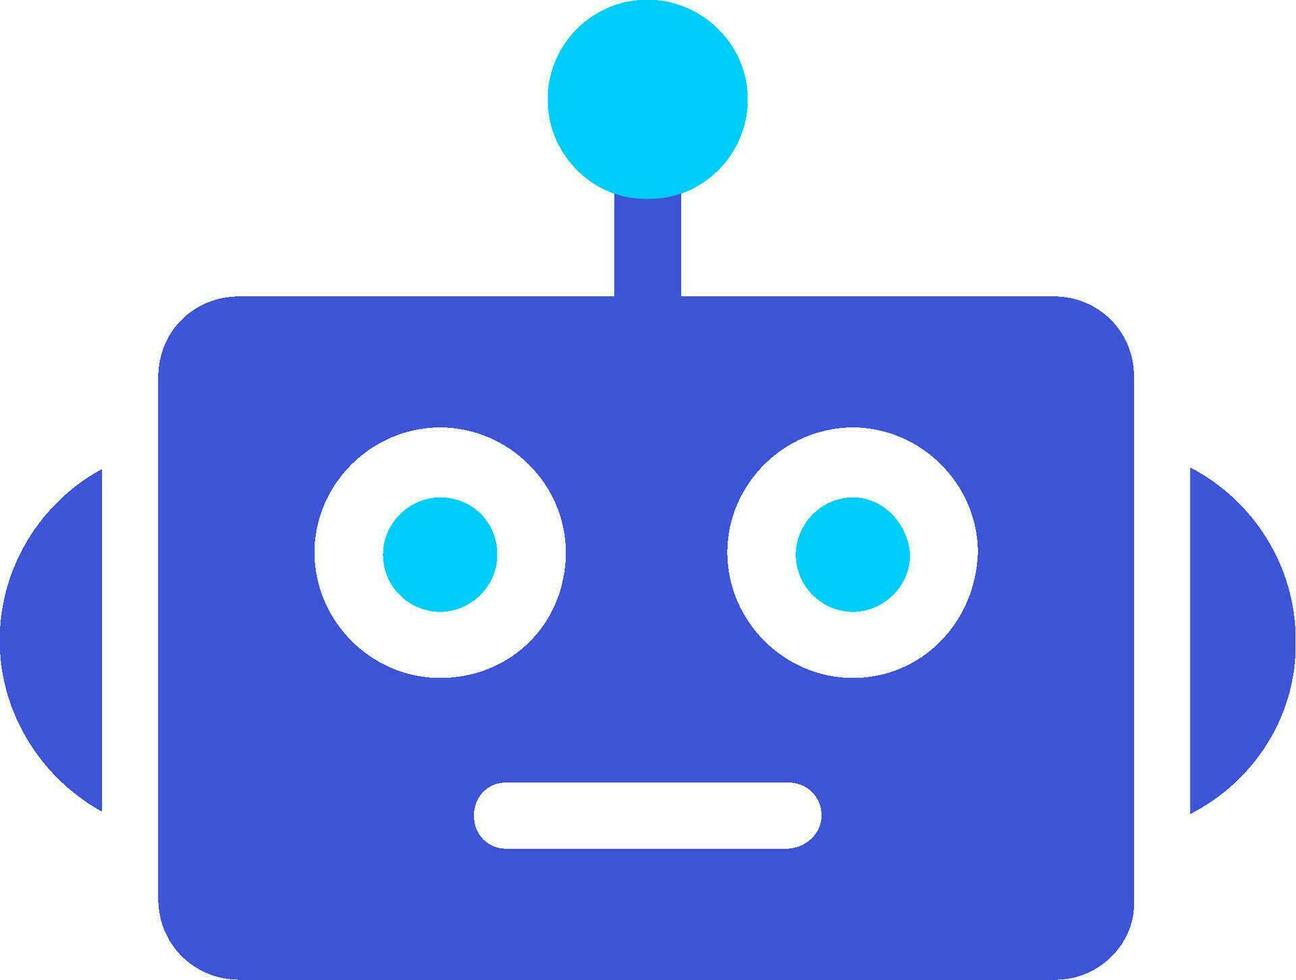 Bot Vector Icon